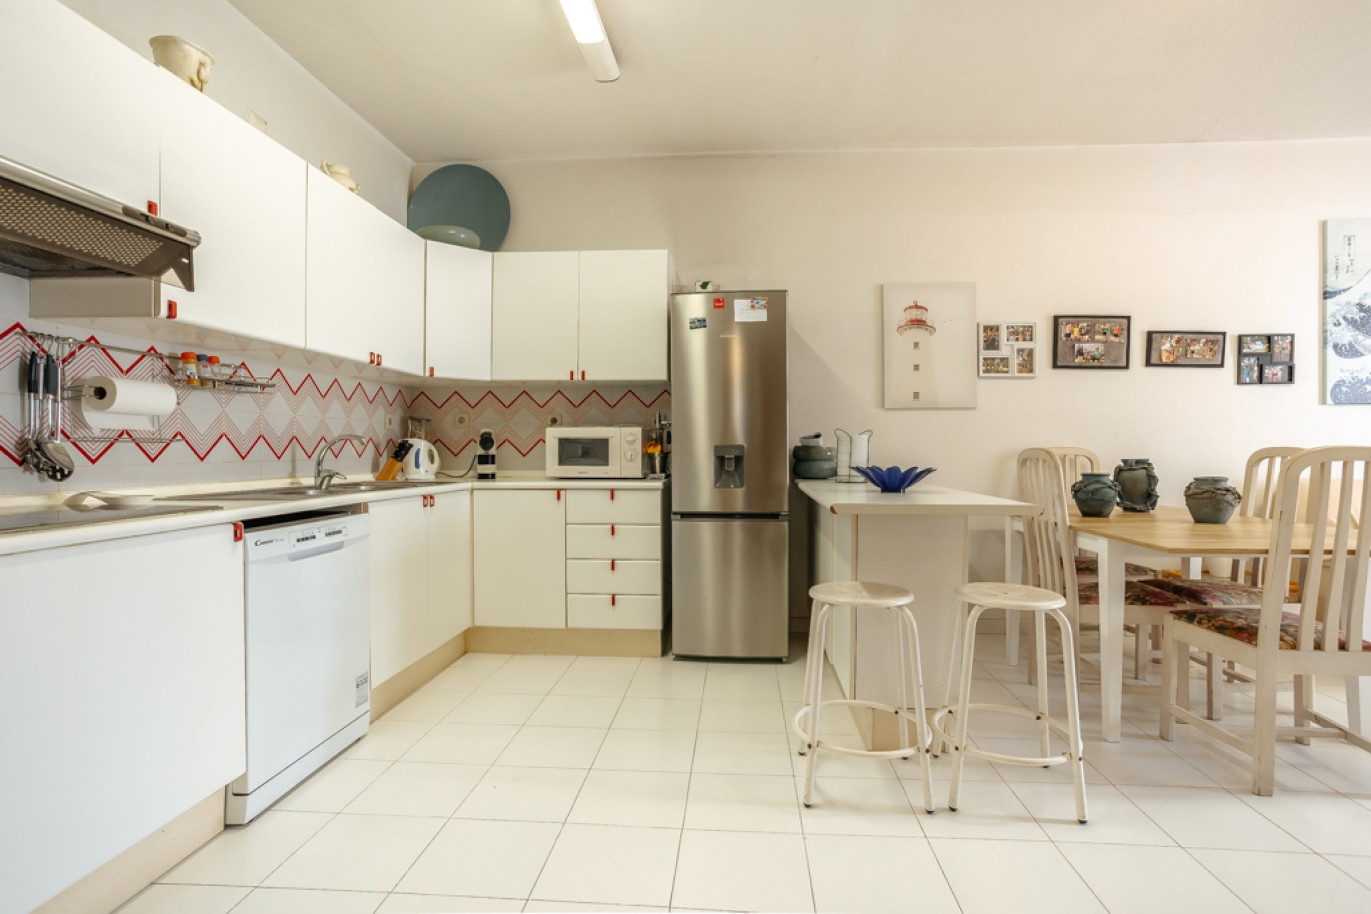 Apartamento com 1+1 quartos, com vista mar, para venda em Porches, Algarve_257043